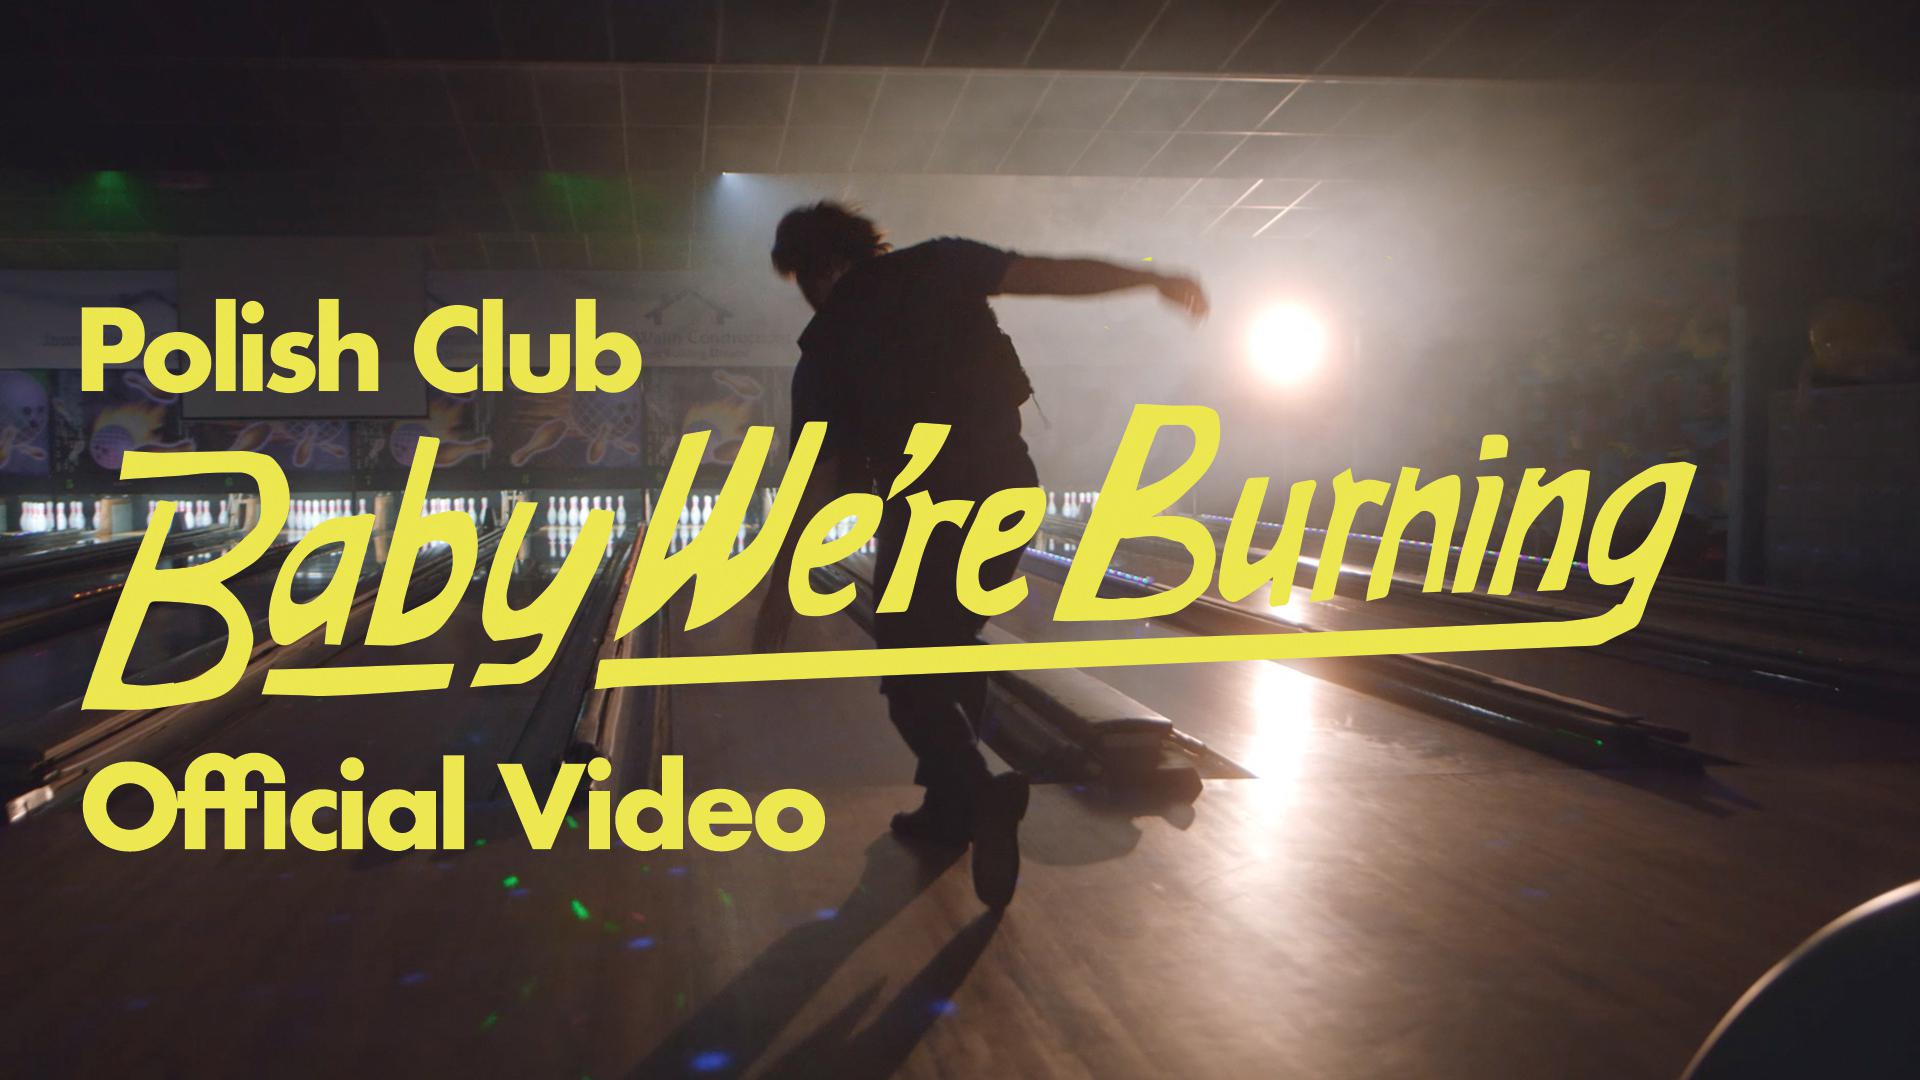 Polish Club - Baby We're Burning